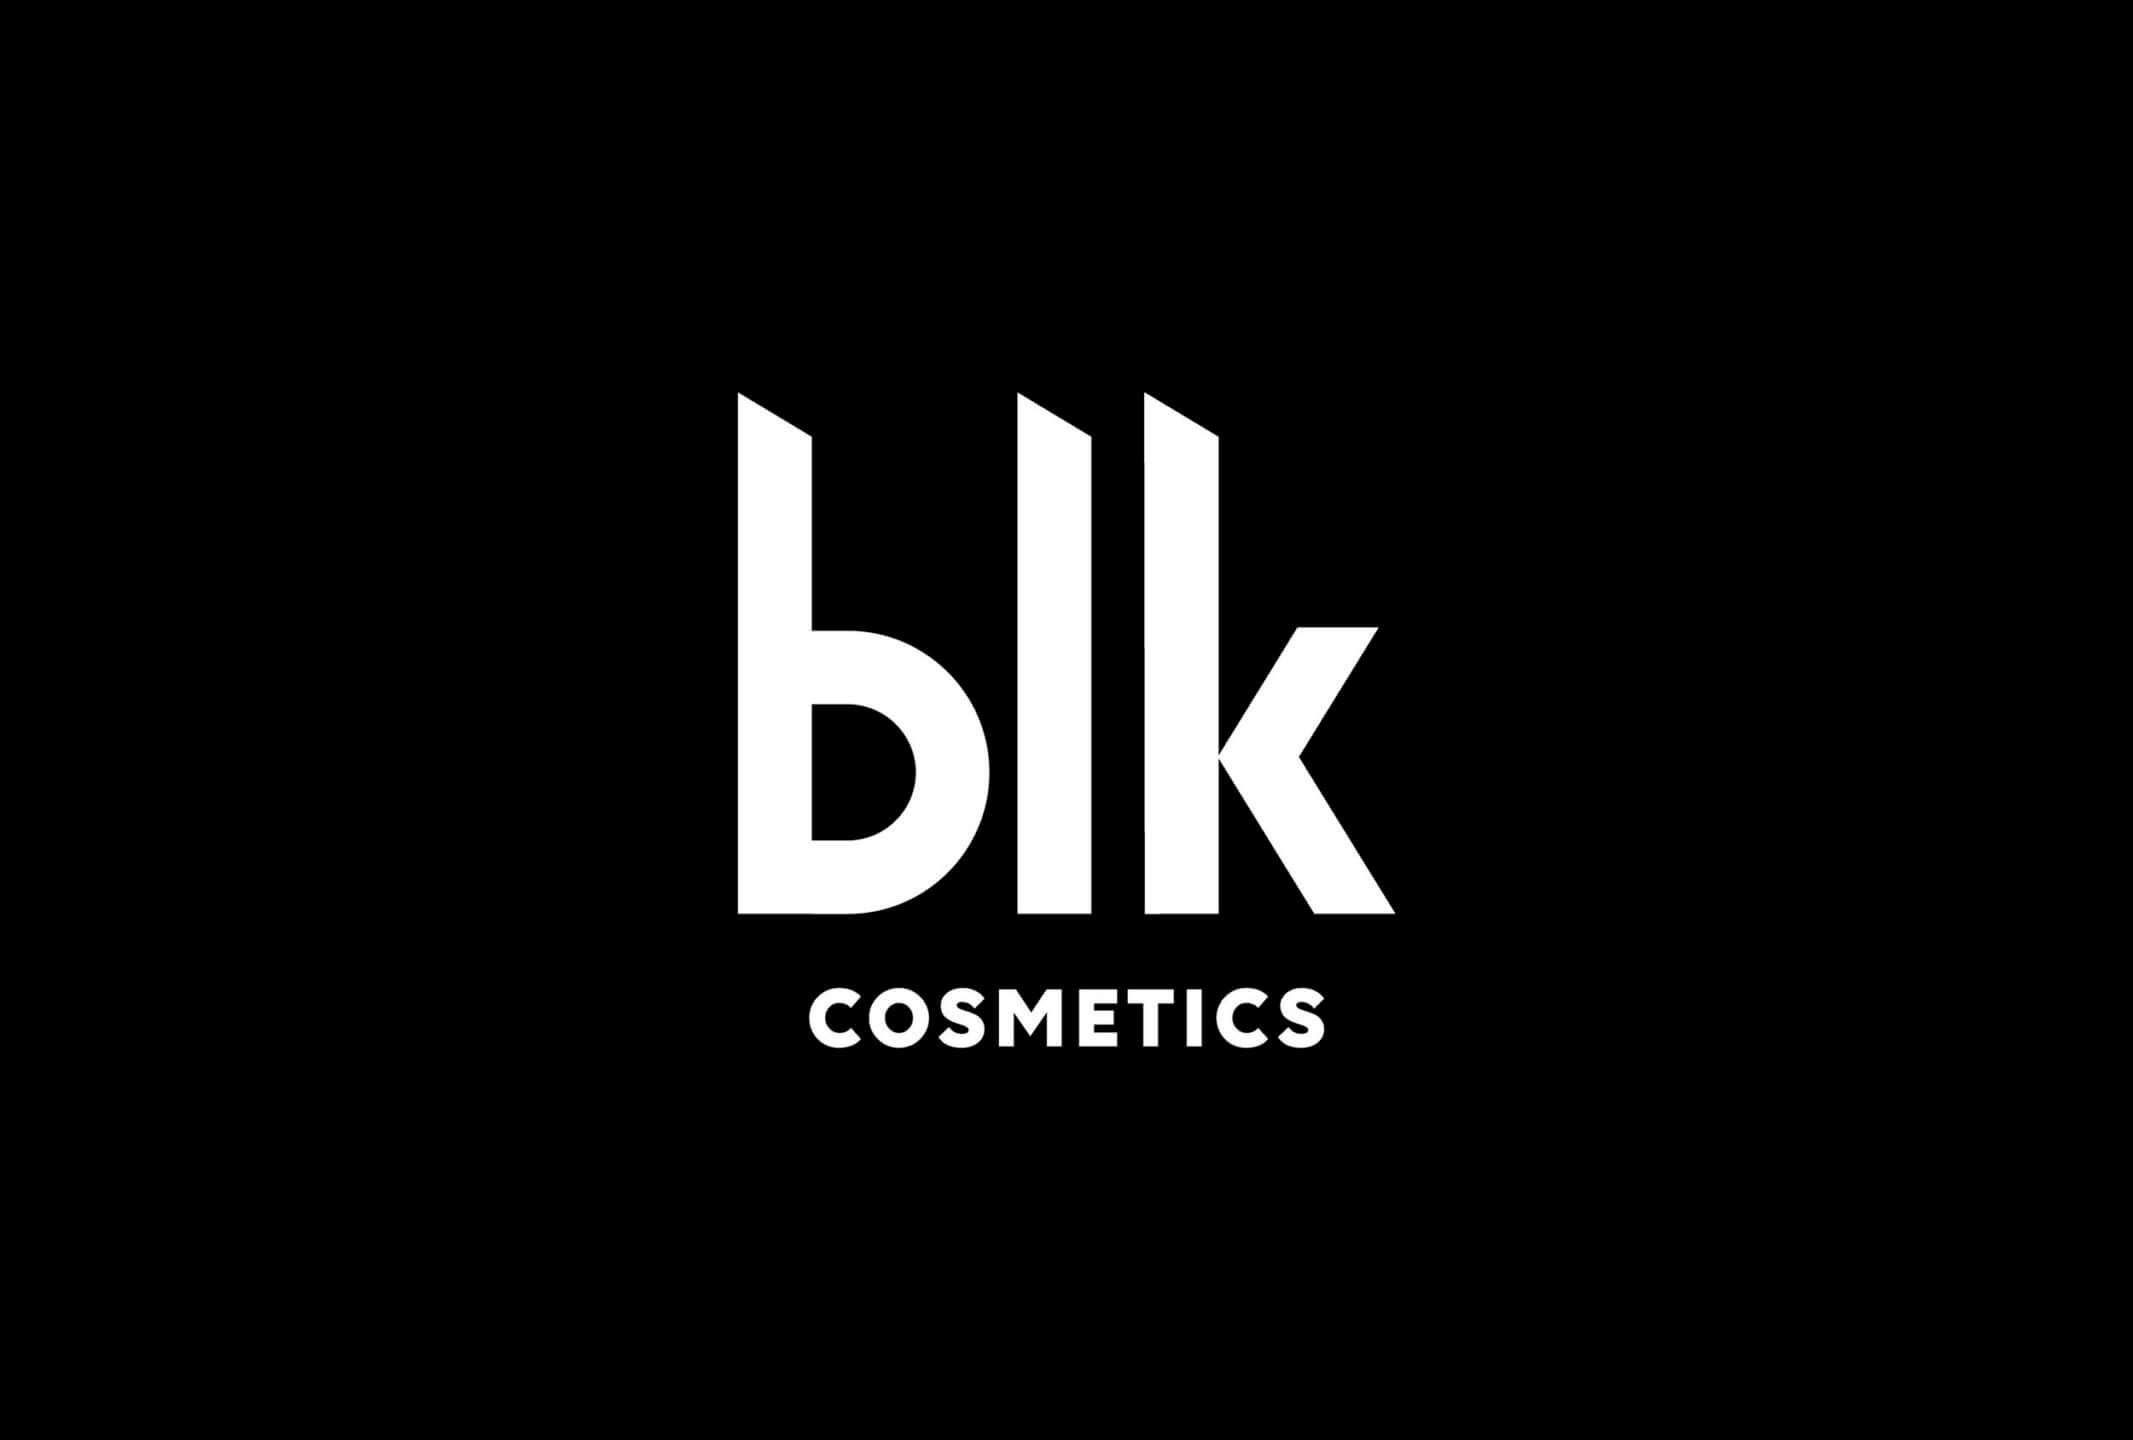 BLK-Branding-01